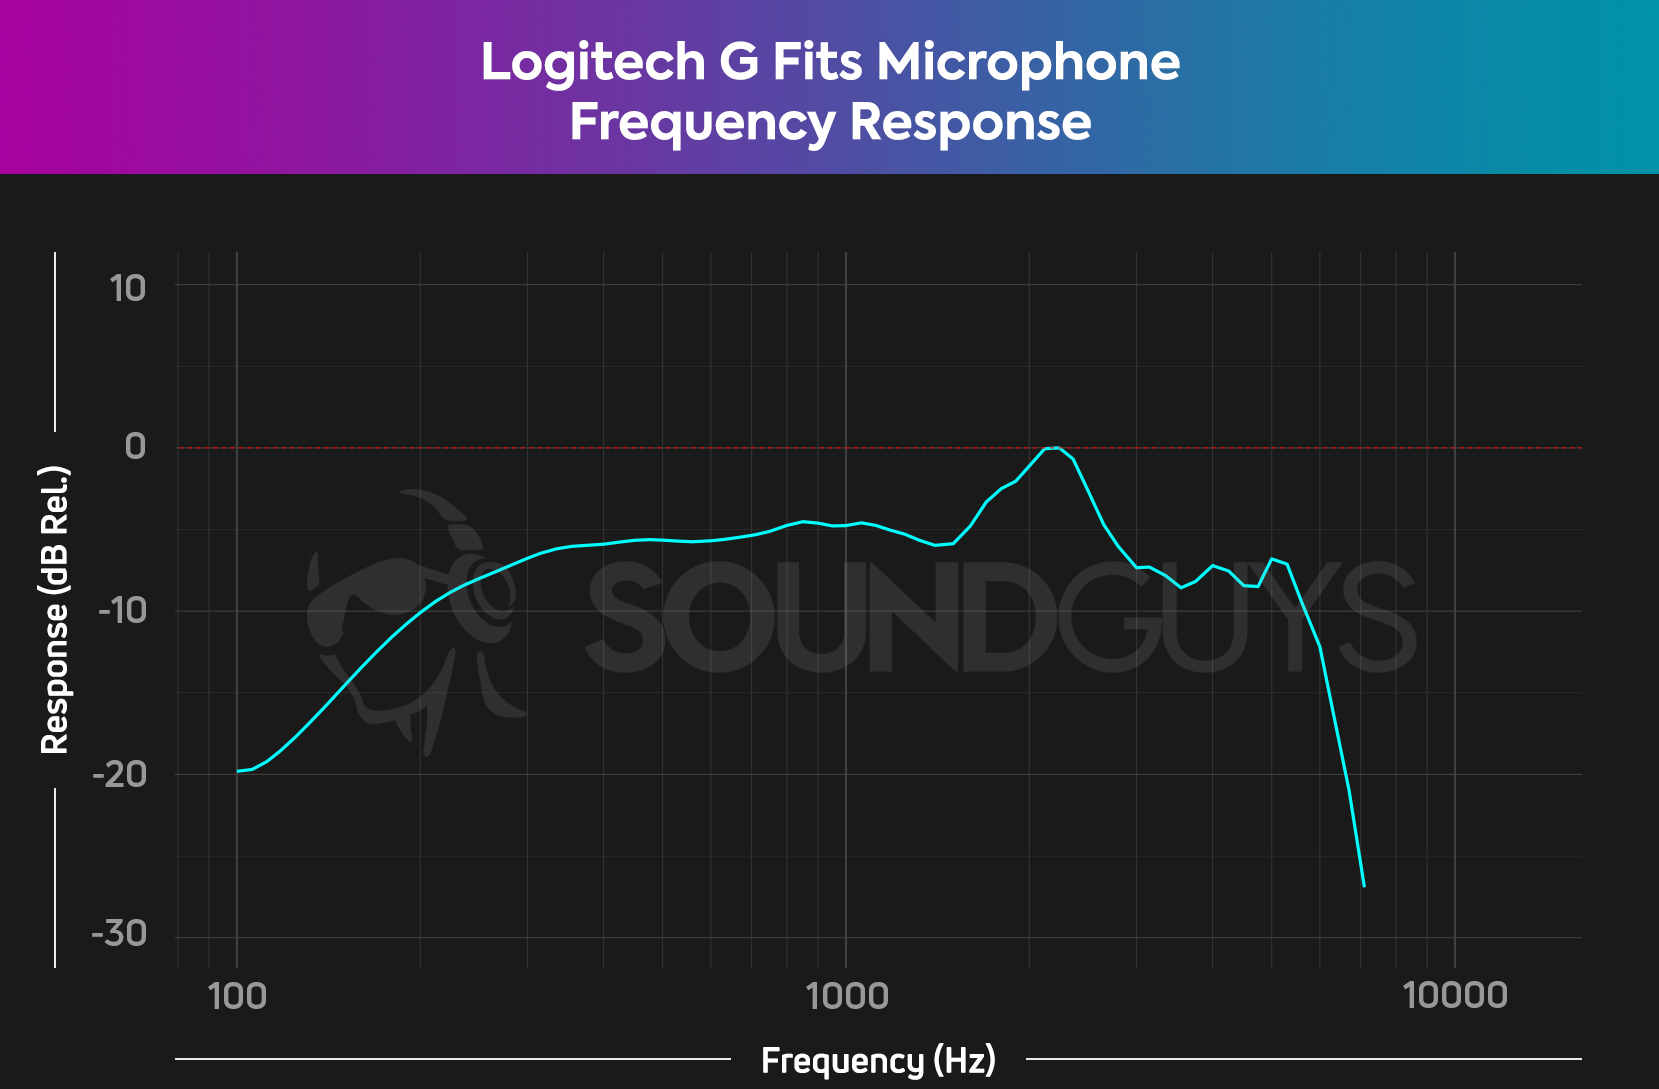 Ένα διάγραμμα απόκρισης συχνότητας για το Logitech G ταιριάζει στο μικρόφωνο των ακουστικών, το οποίο δείχνει σημαντική κυλίνδρων στο εύρος μπάσων